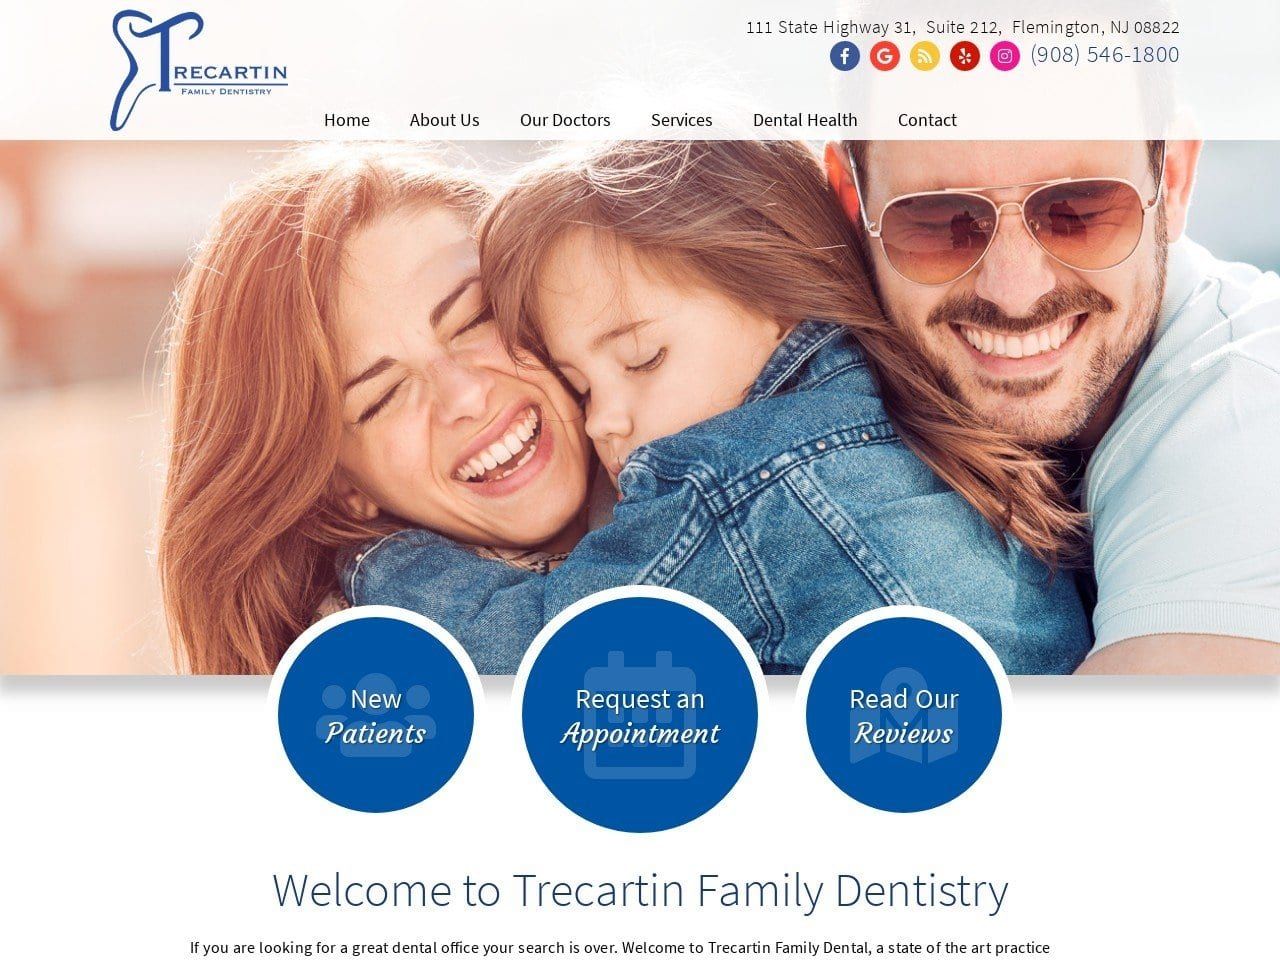 Trecartin Family Dental Website Screenshot from trecartinfamilydental.com